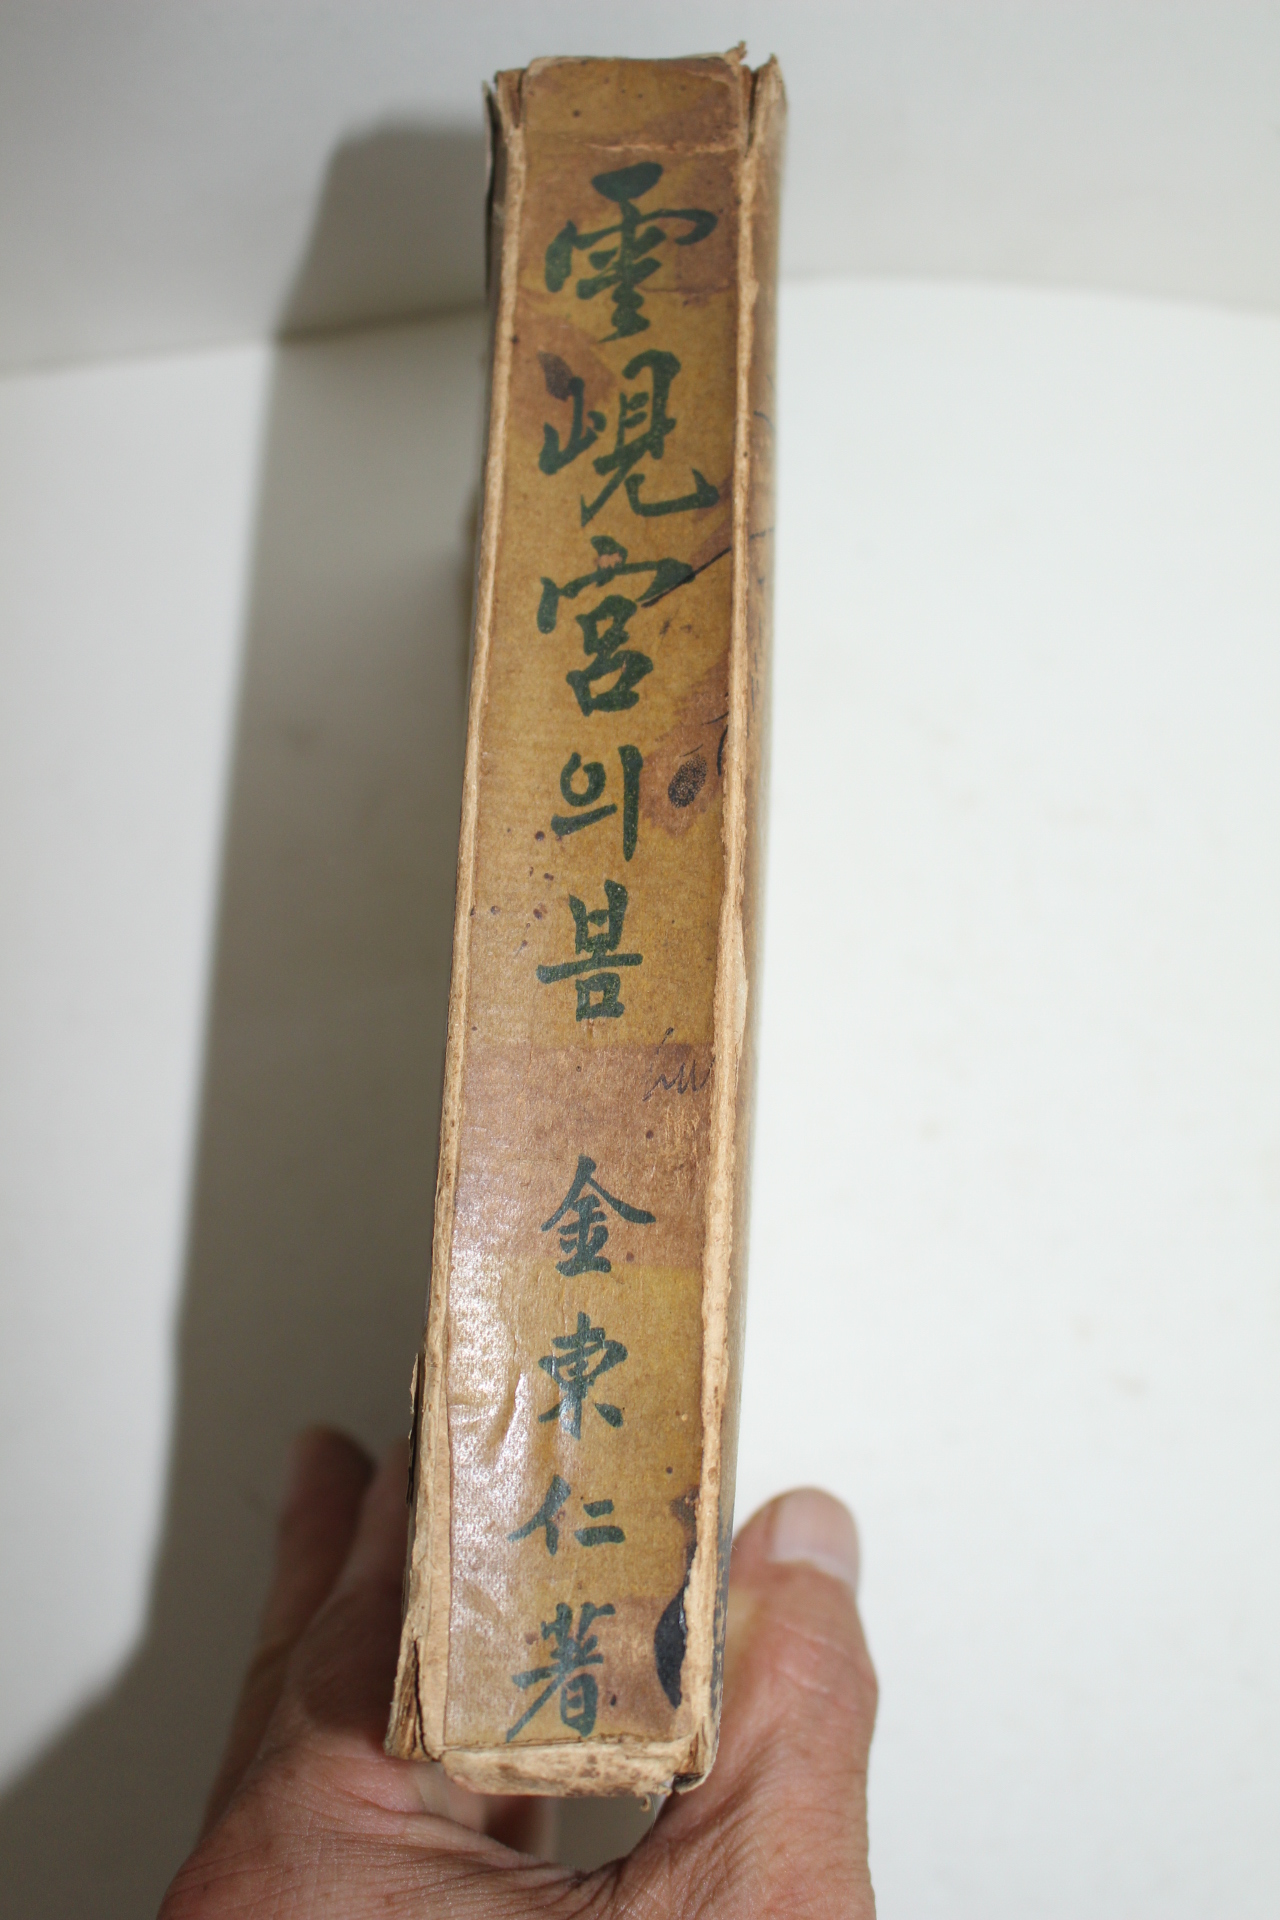 1940년재판 한성도서 김동인(金東仁) 운현궁의 봄